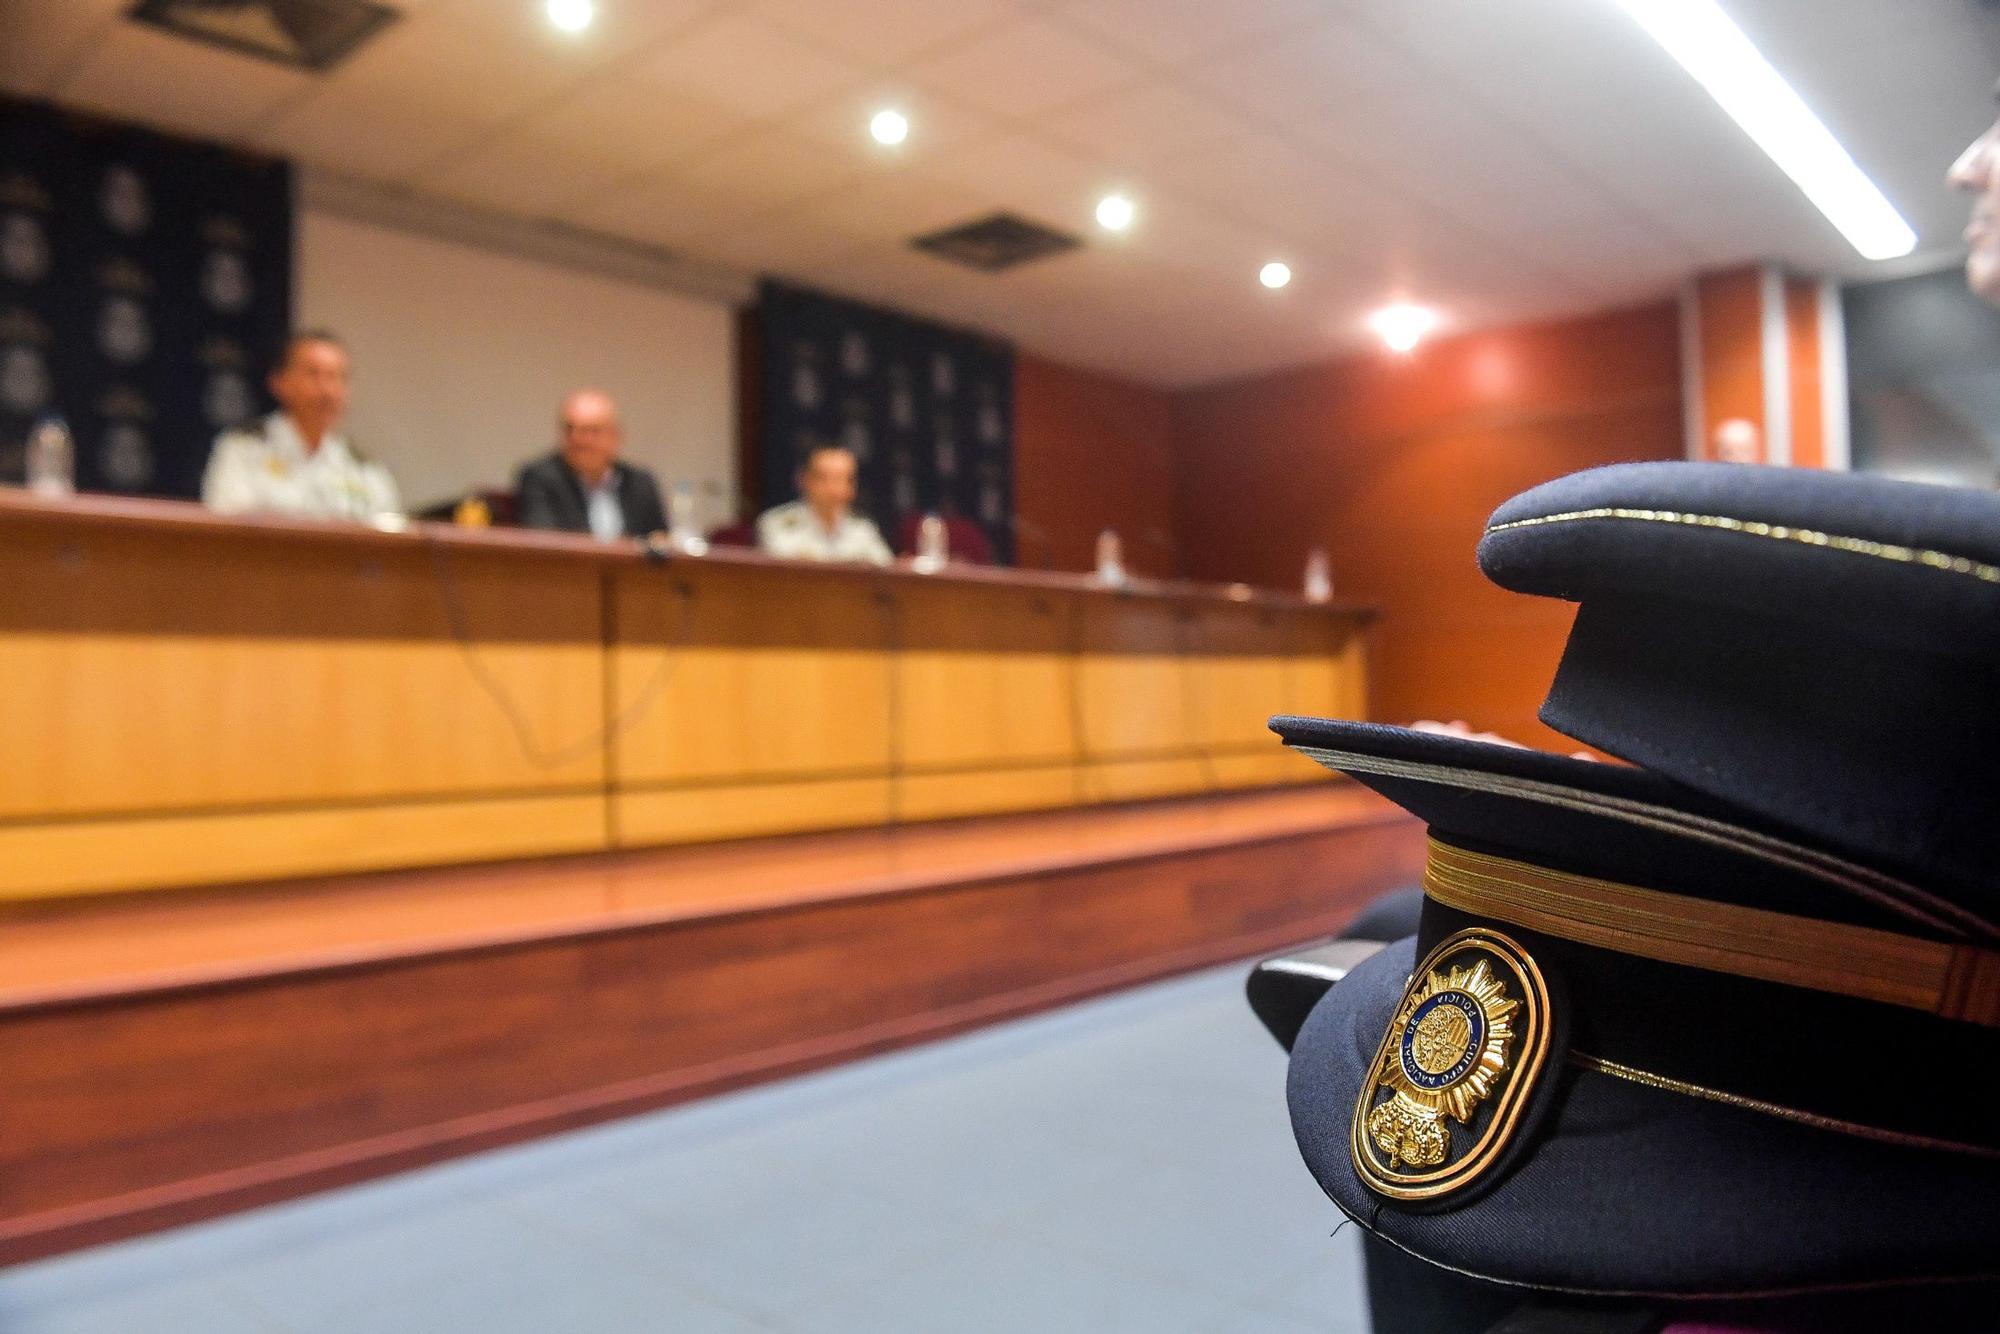 Presentación de 184 nuevos policías nacionales para Canarias